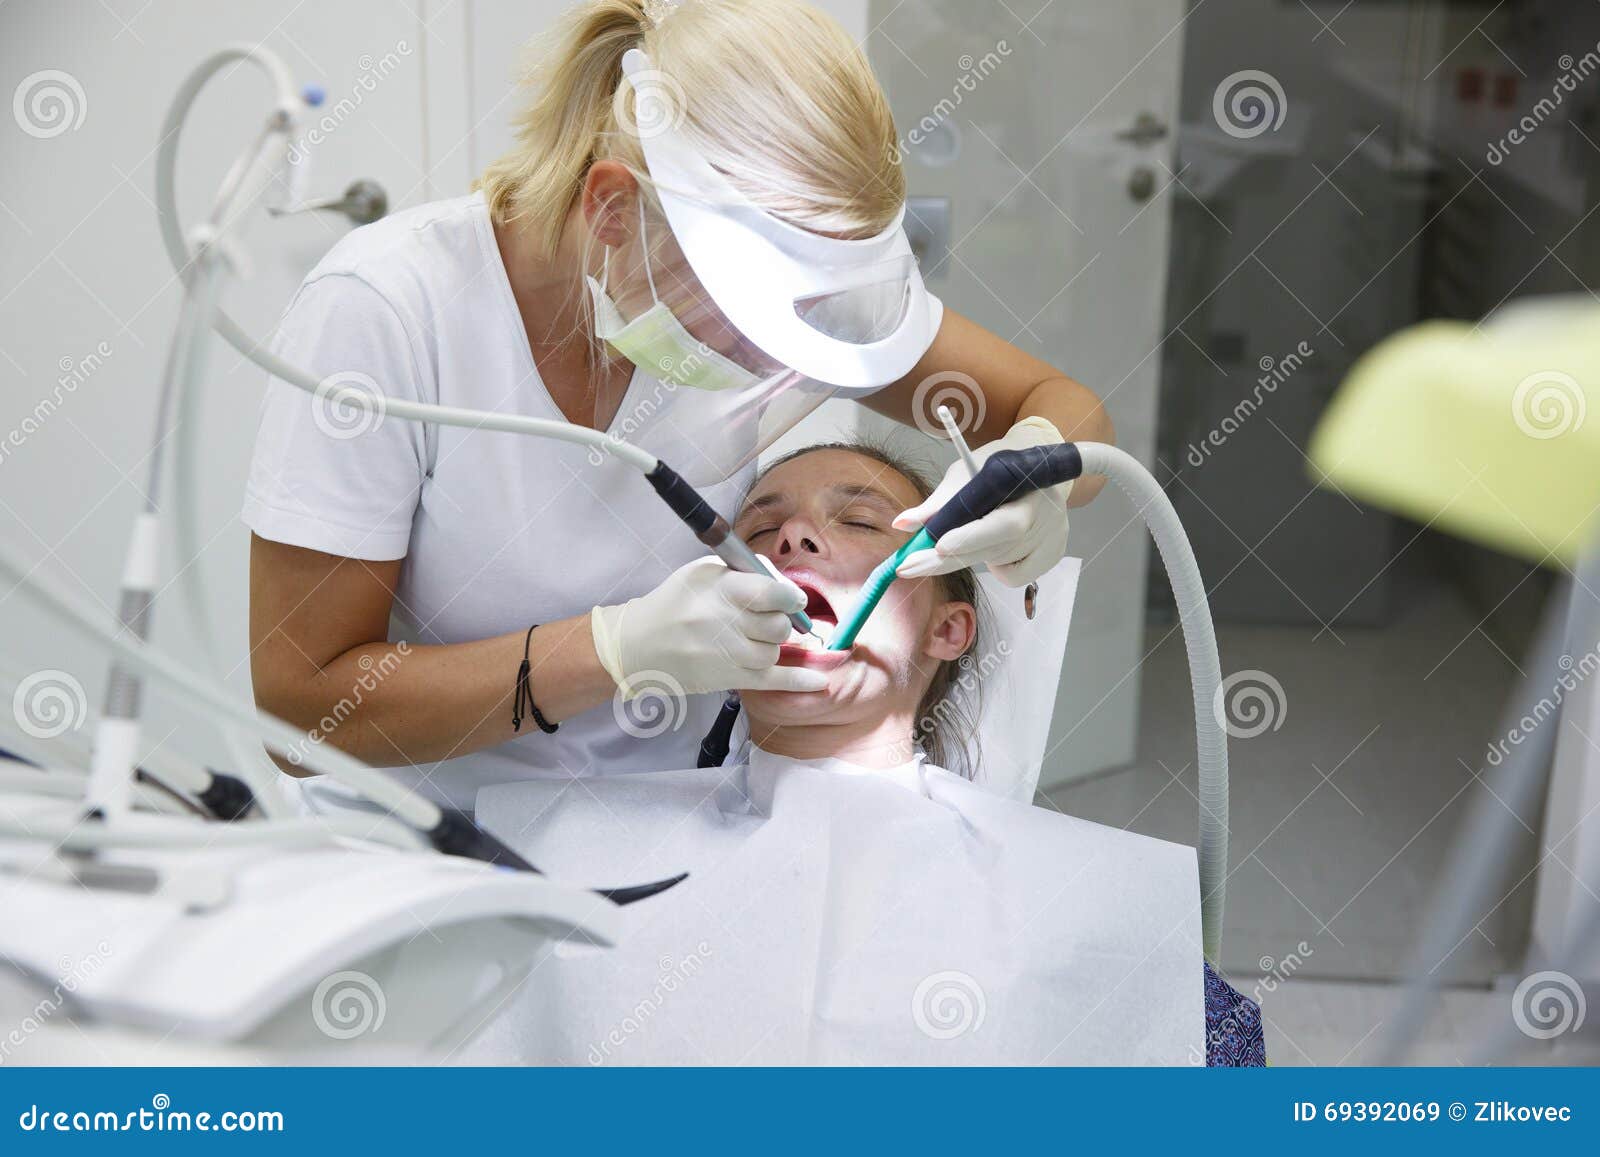 Γυναίκα στο οδοντικό γραφείο, οδοντίατρος που εξετάζει και που καθαρίζει τα δόντια της ταρτάρου και πινακίδας, που αποτρέπουν την περιοδοντική ασθένεια Οδοντική υγιεινή, επίπονες διαδικασίες και έννοια πρόληψης